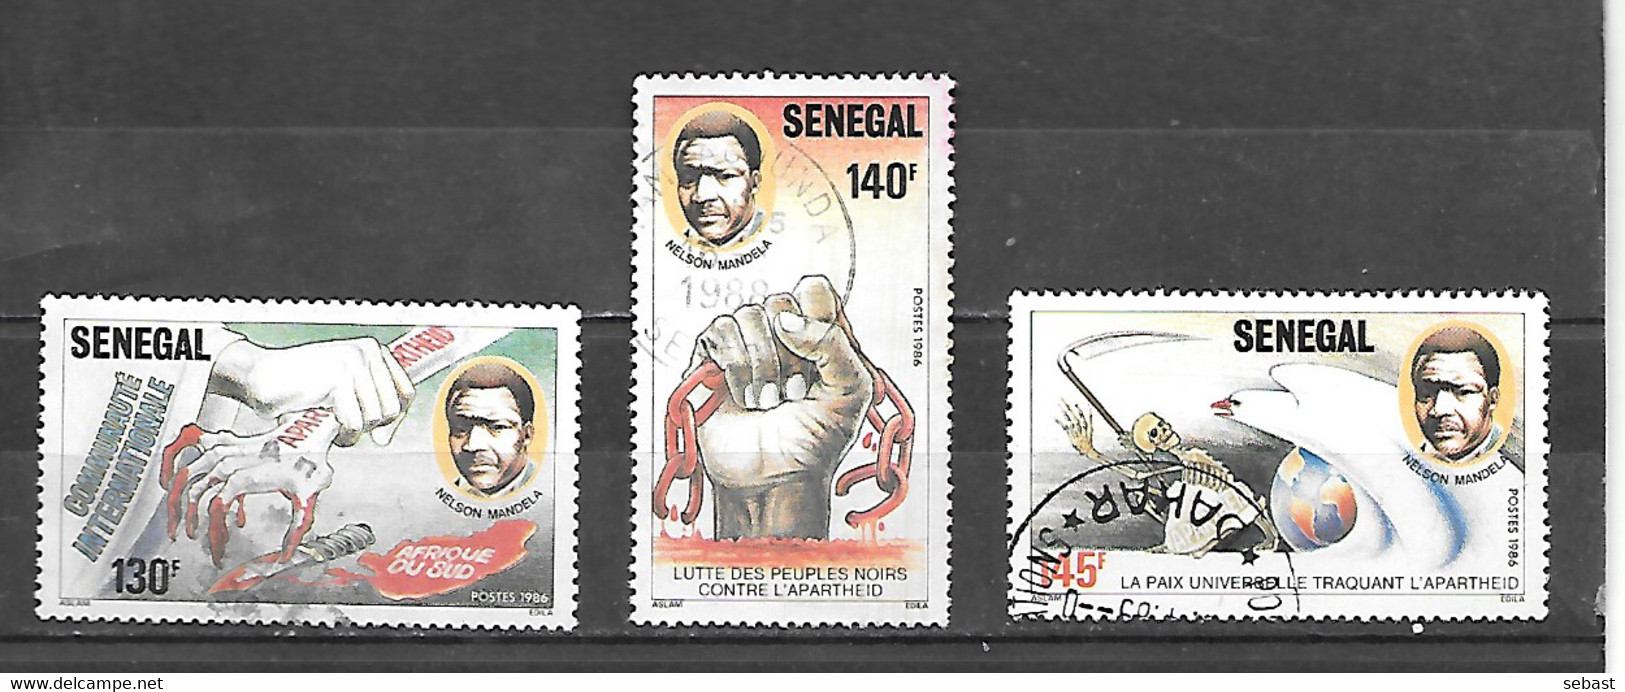 TIMBRE OBLITERE DU SENEGAL DE 1987 N° MICHEL 920/22 - Sénégal (1960-...)